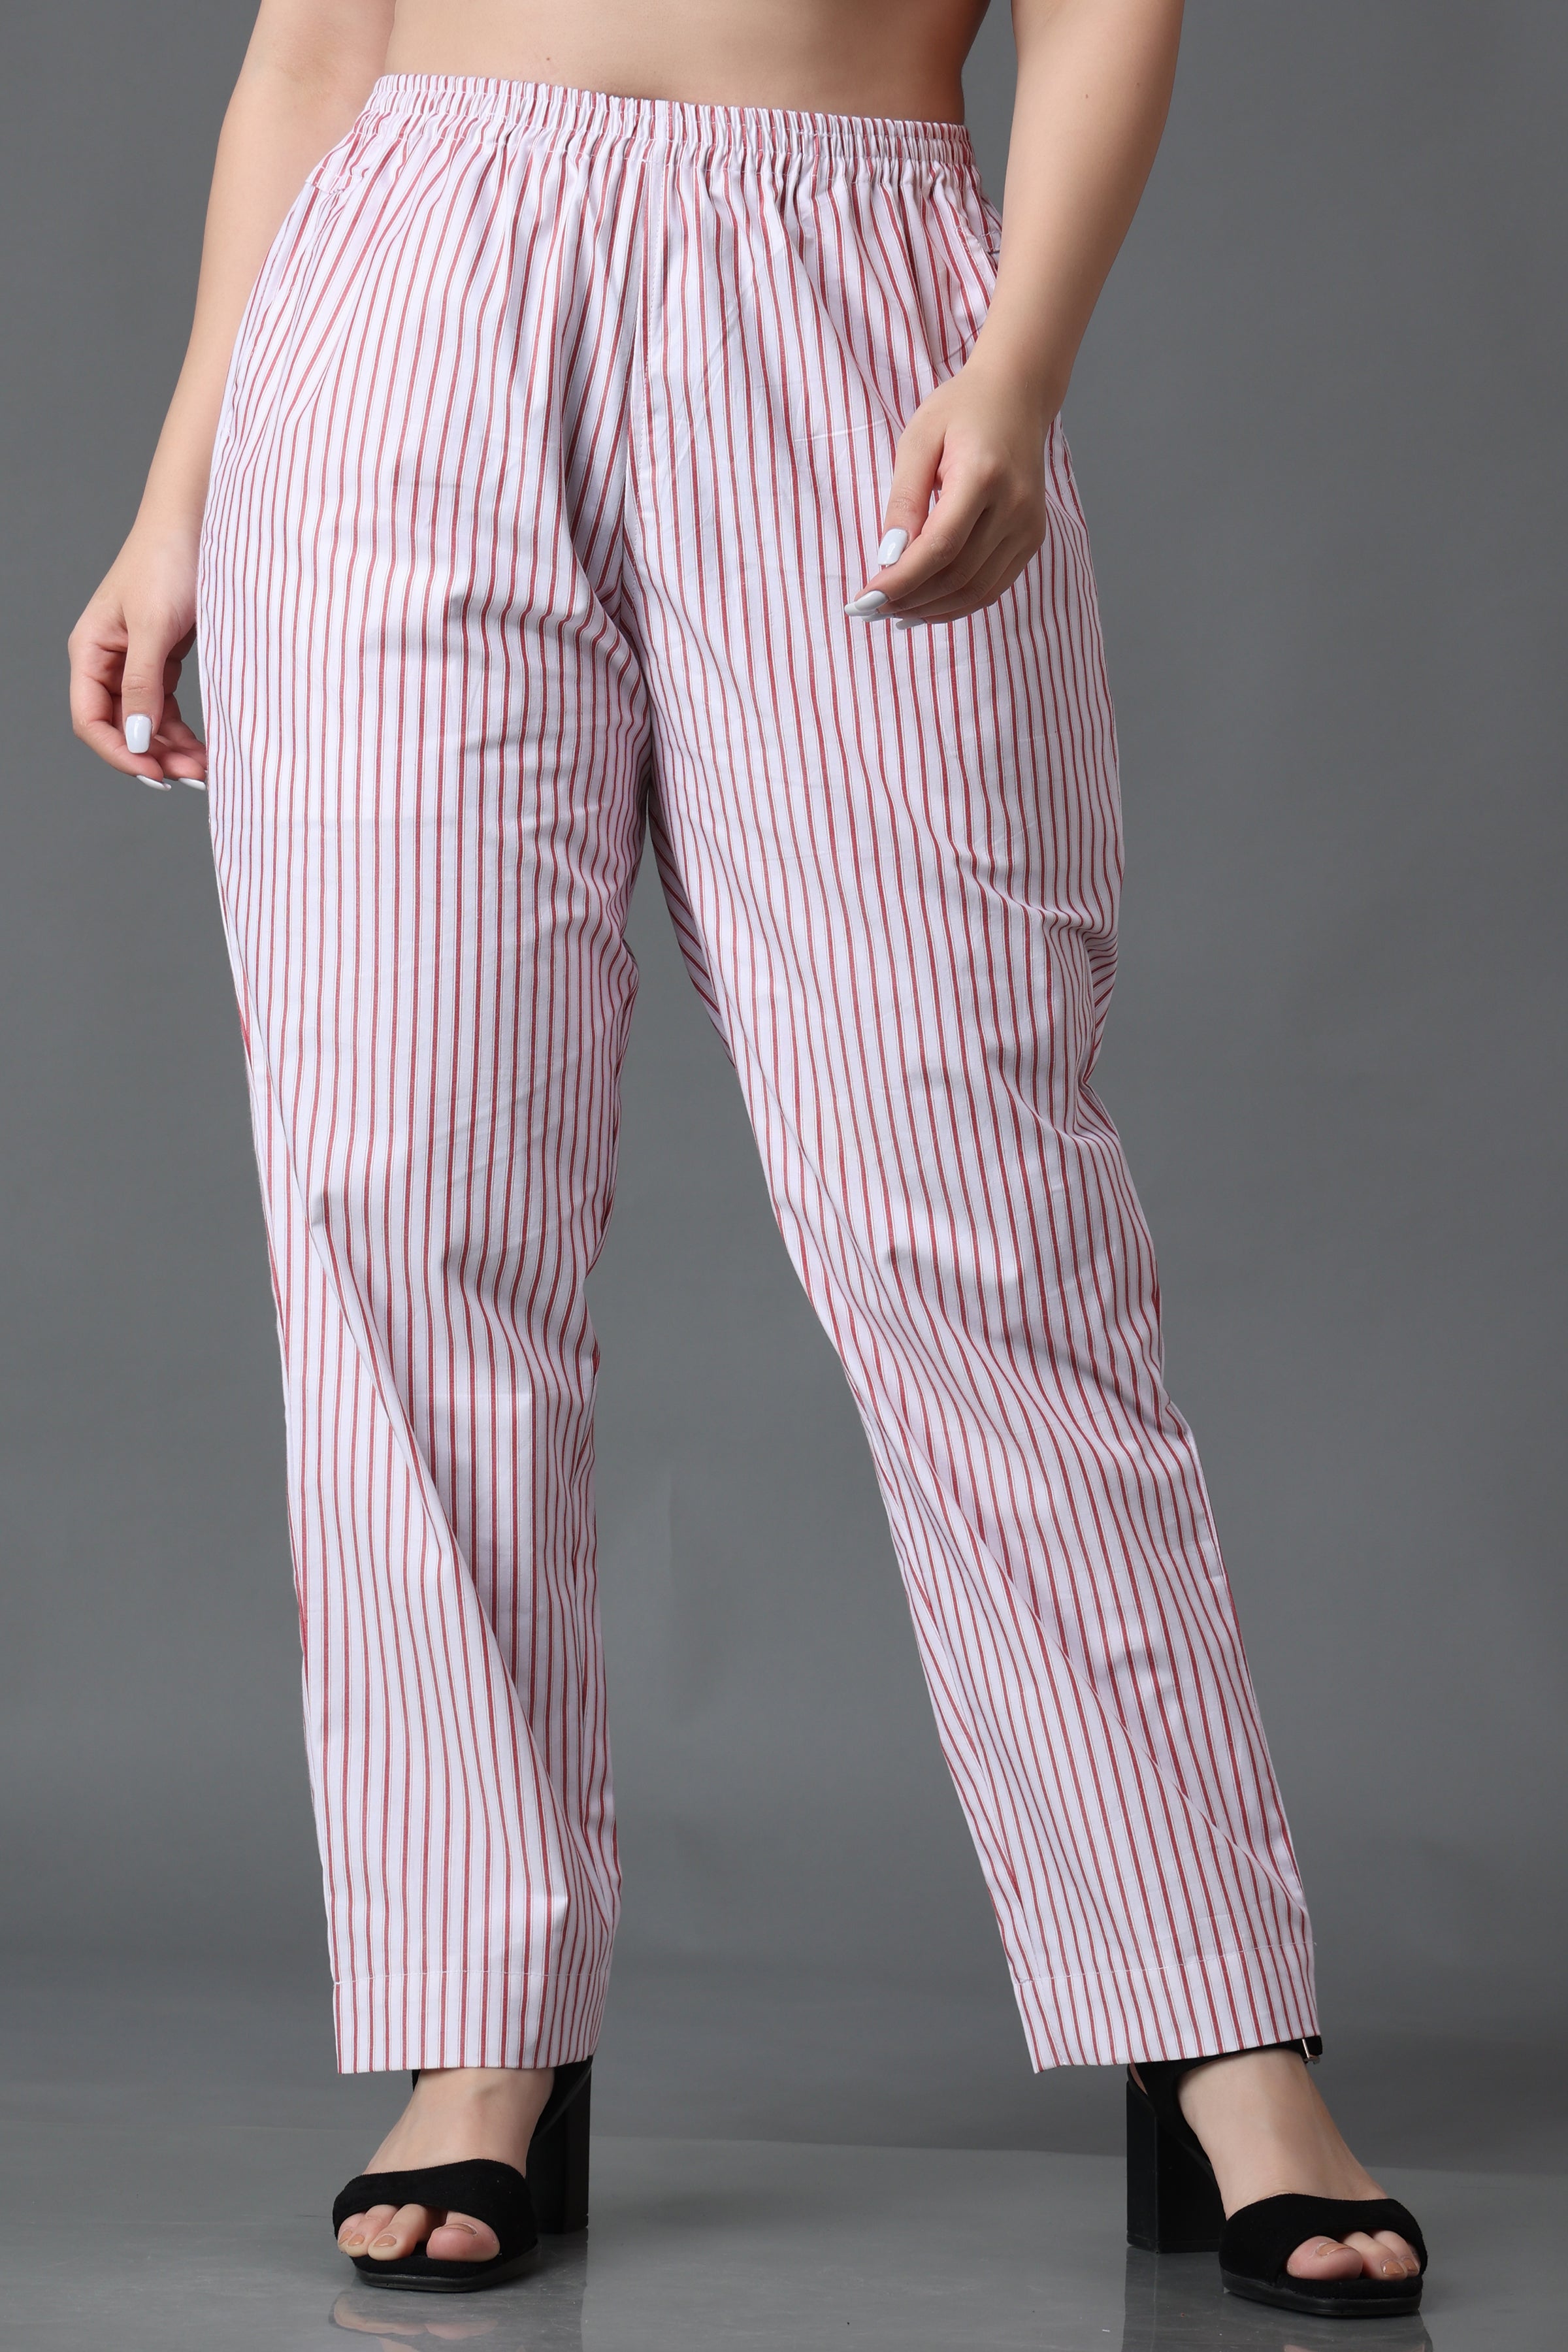 Women's Trousers - Printed Trouser, Stripe Pants & Cotton Trouser